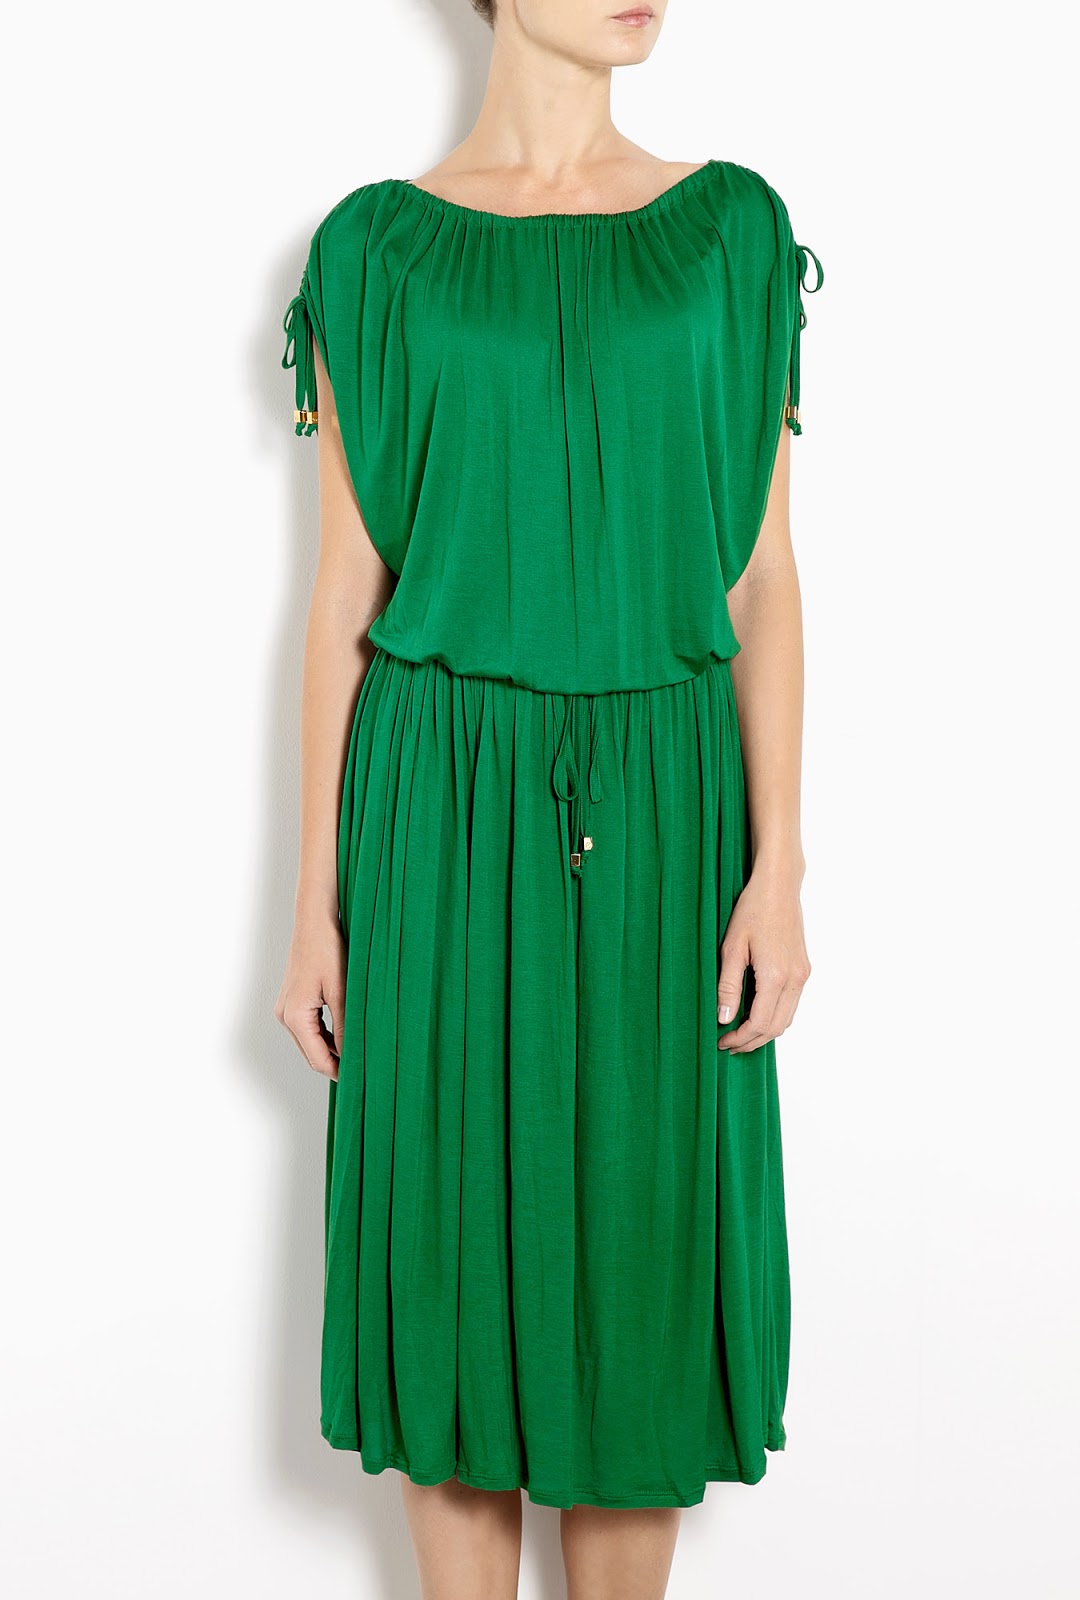 green michael kors dress